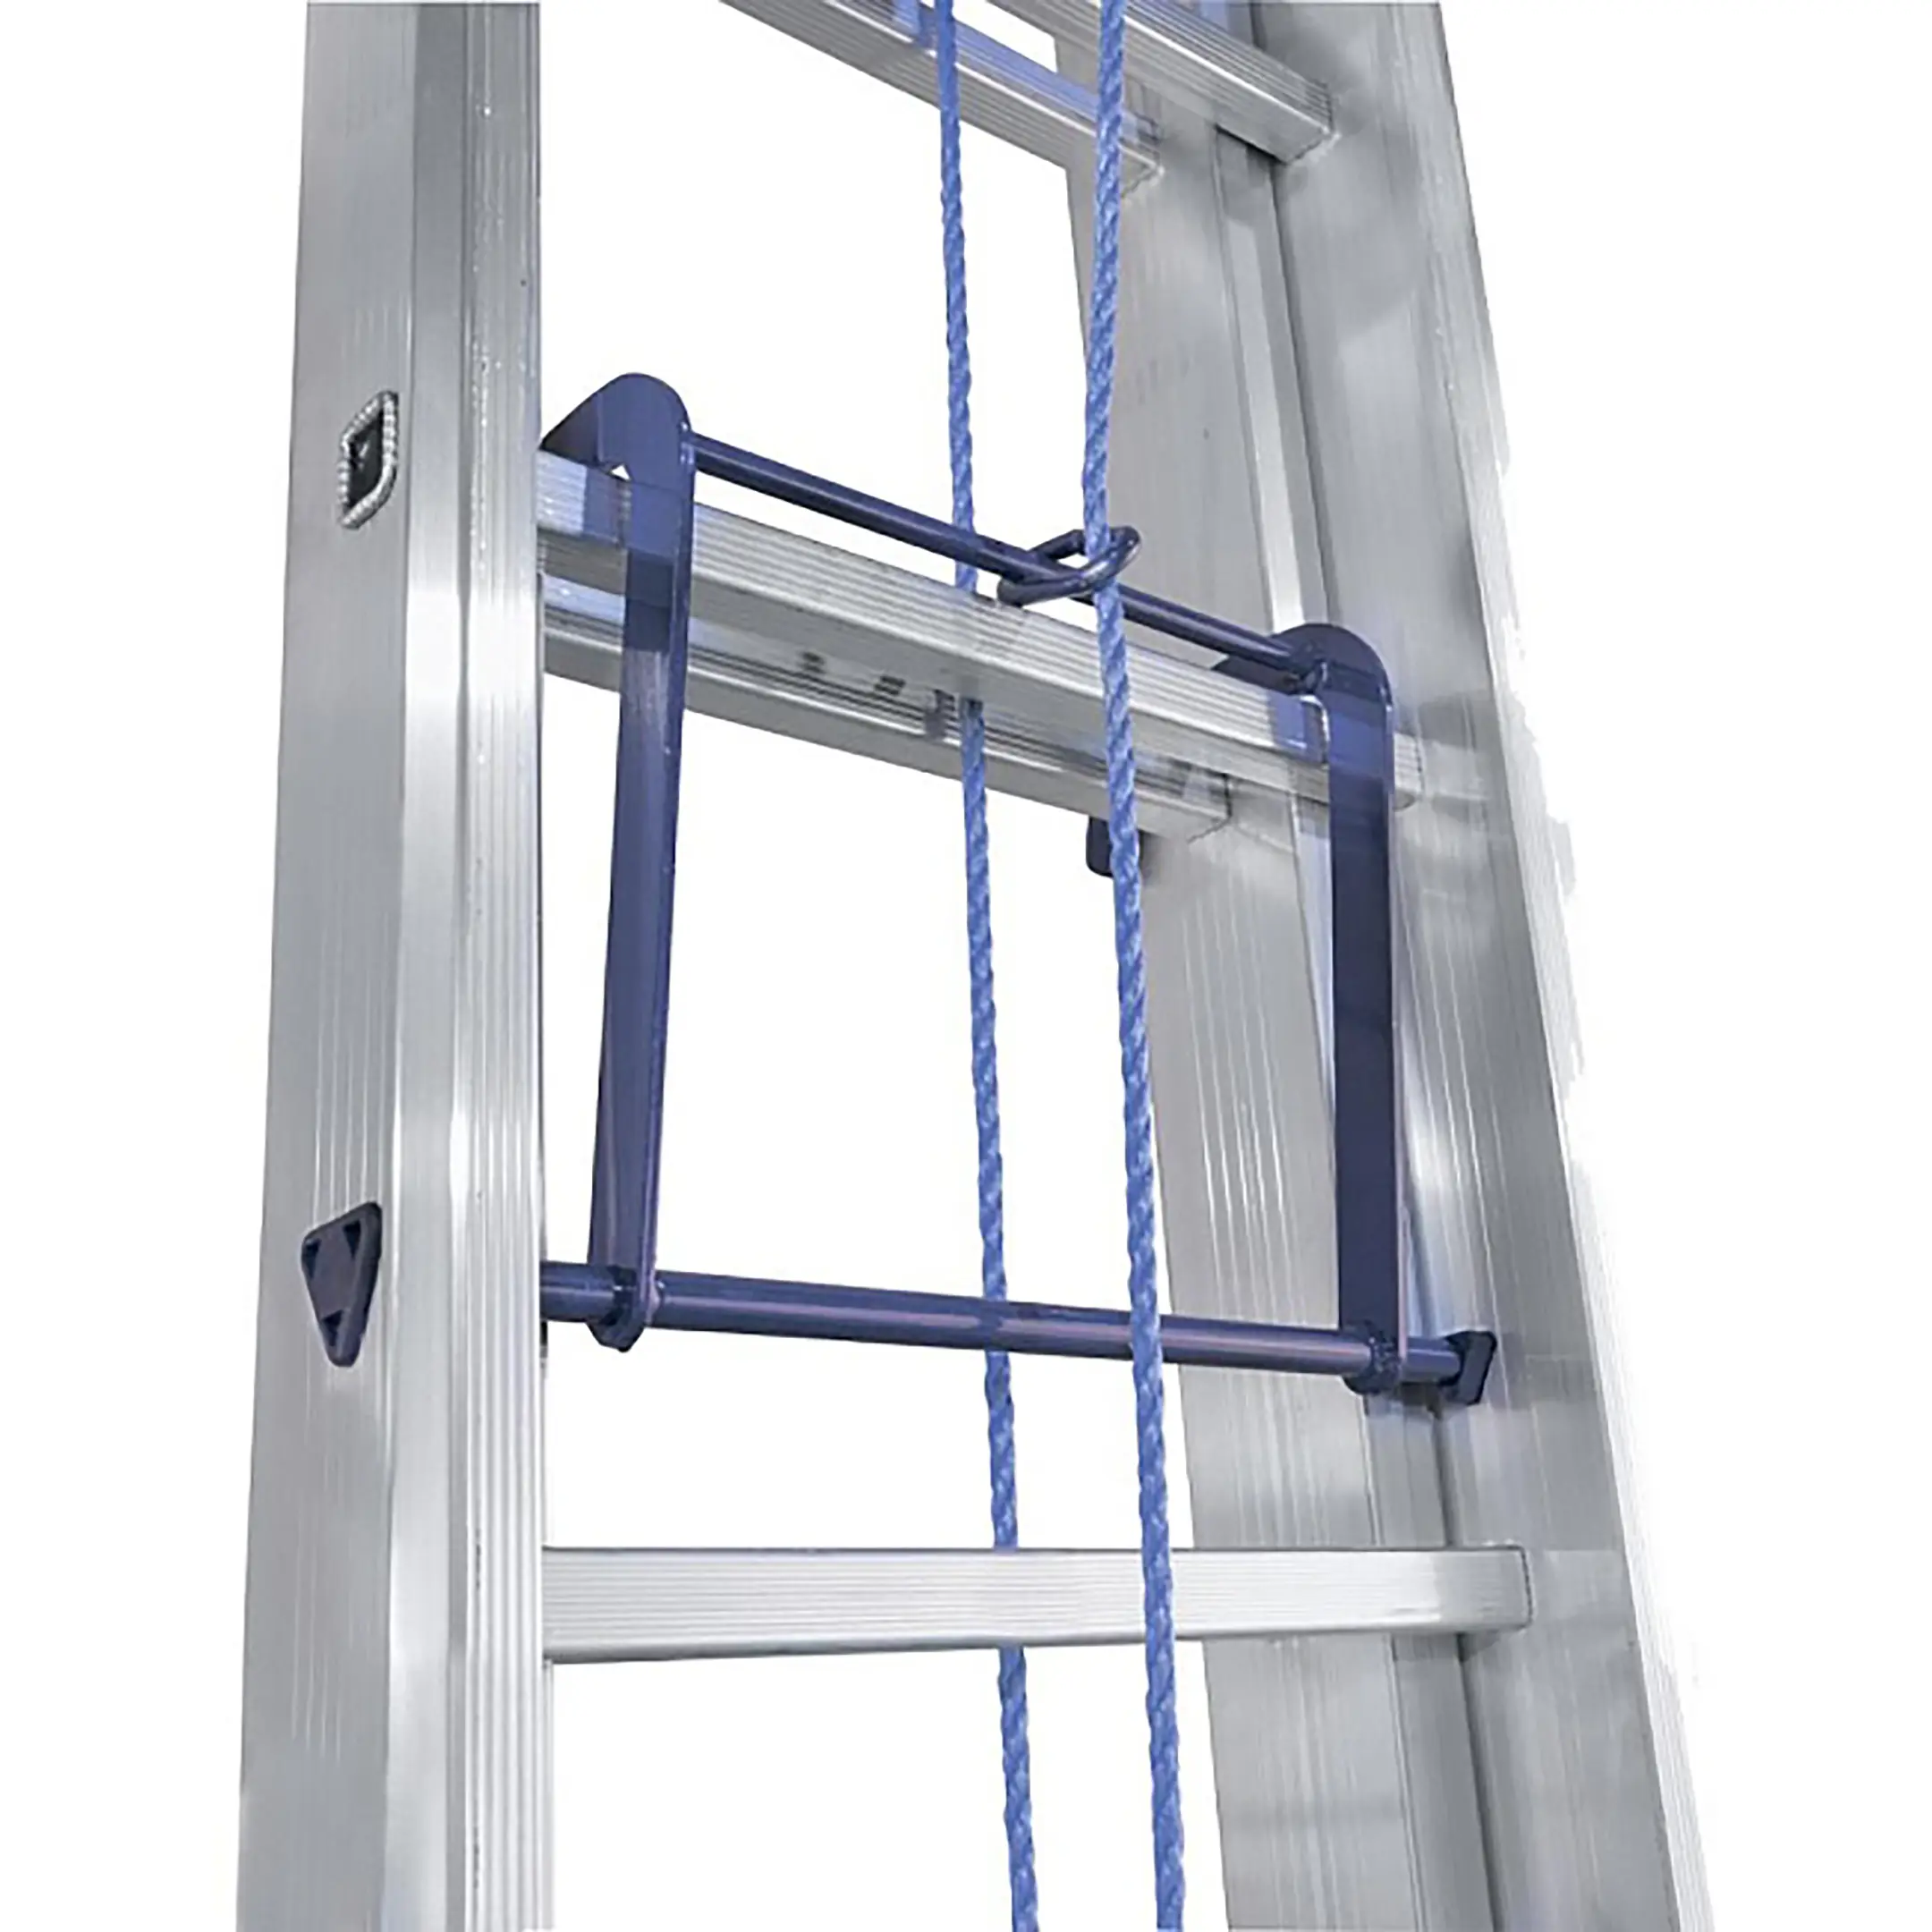 Лестница трехсекционная алюминиевая выдвижная с тросом Alumet 3х20 арт. 3320